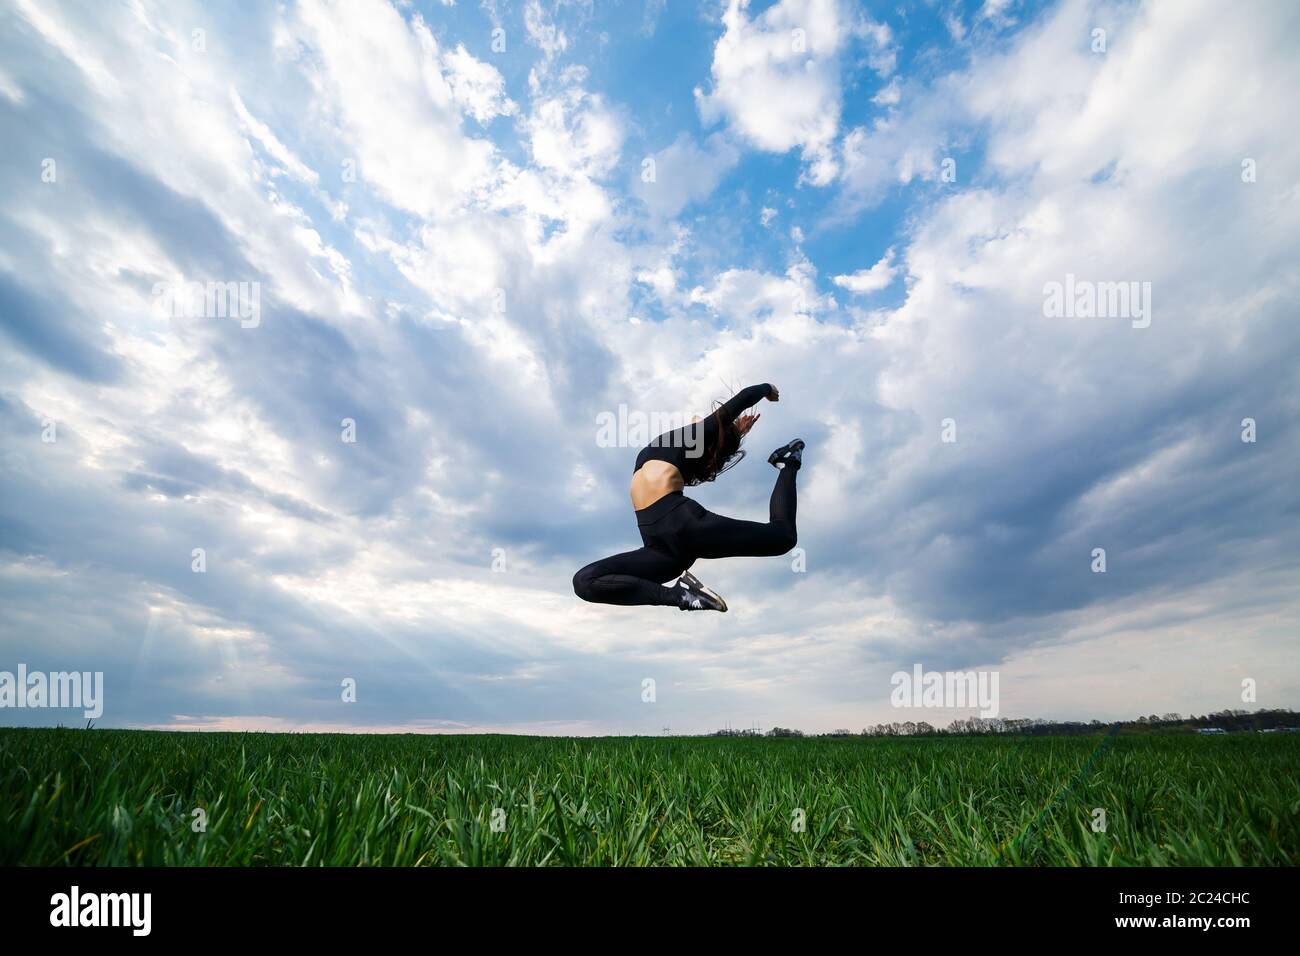 La jeune gymnaste professionnelle saute dans la nature contre le ciel bleu. Une athlète de fille dans un haut noir et des leggings noirs fait des exercices acrobatiques Banque D'Images